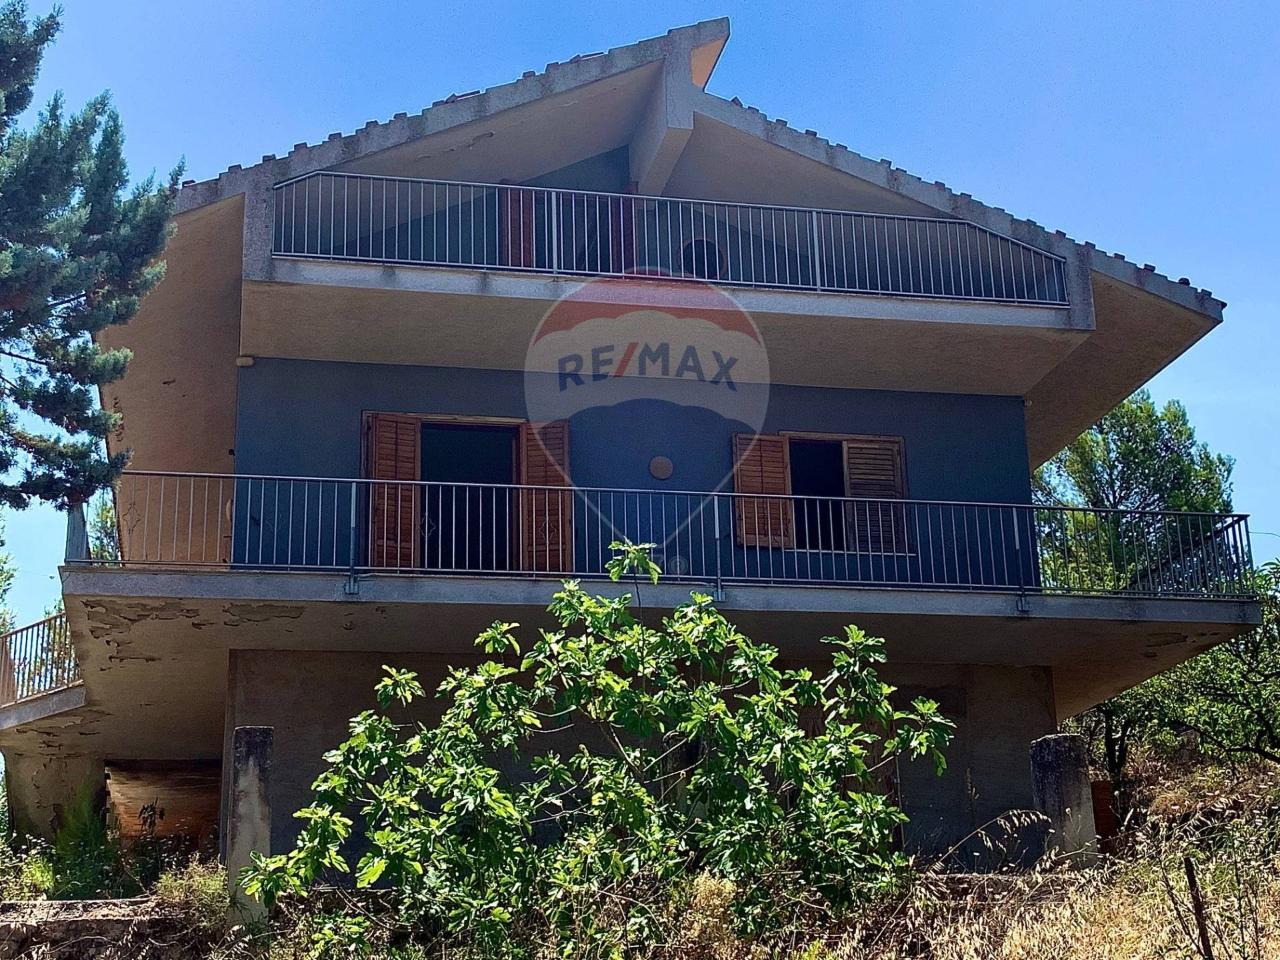 Villa in vendita a Chiaramonte Gulfi